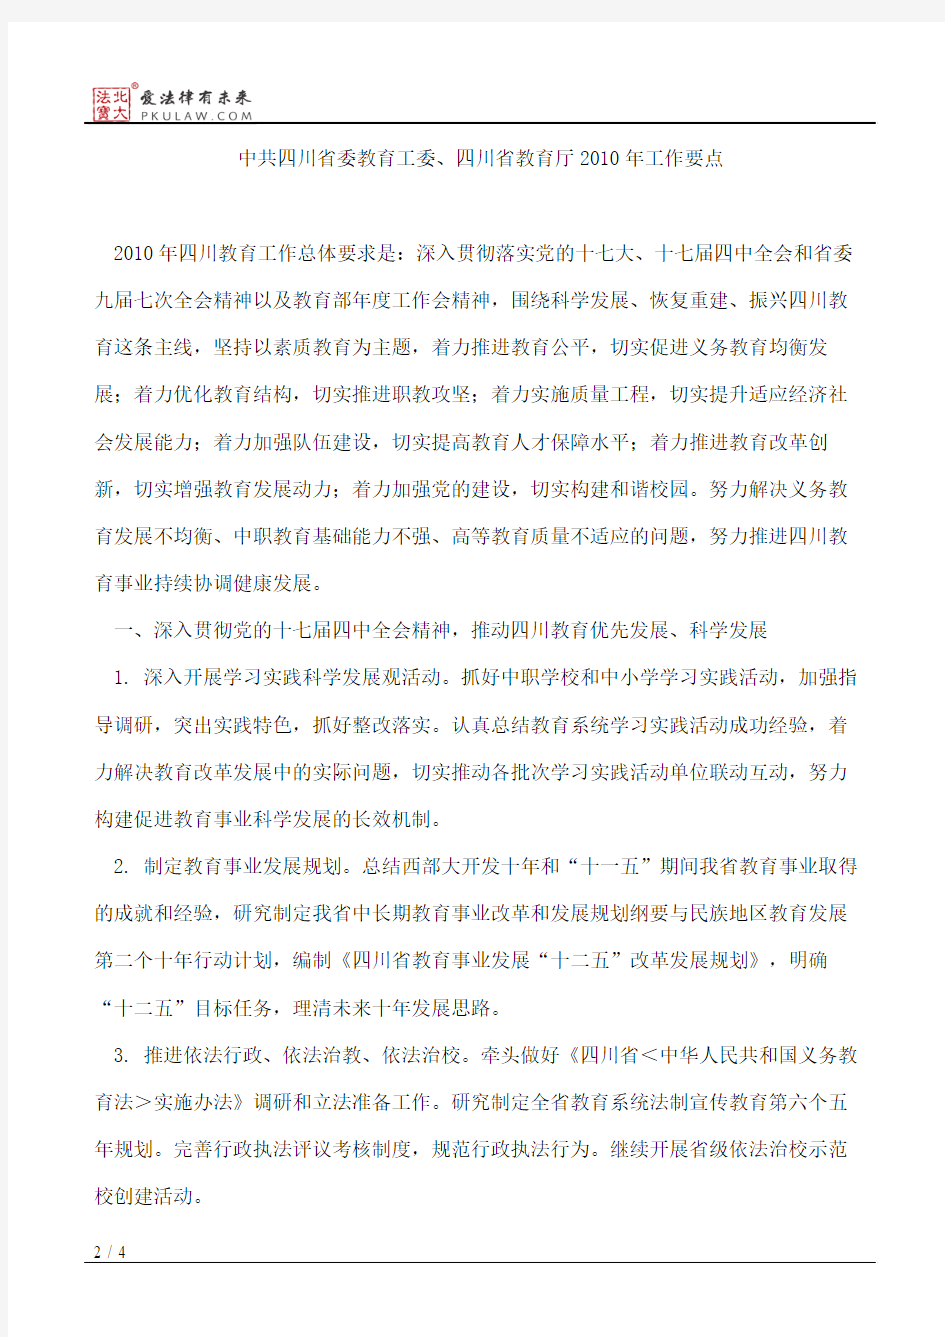 中共四川省委教育工委、四川省教育厅关于印发2010年工作要点的通知